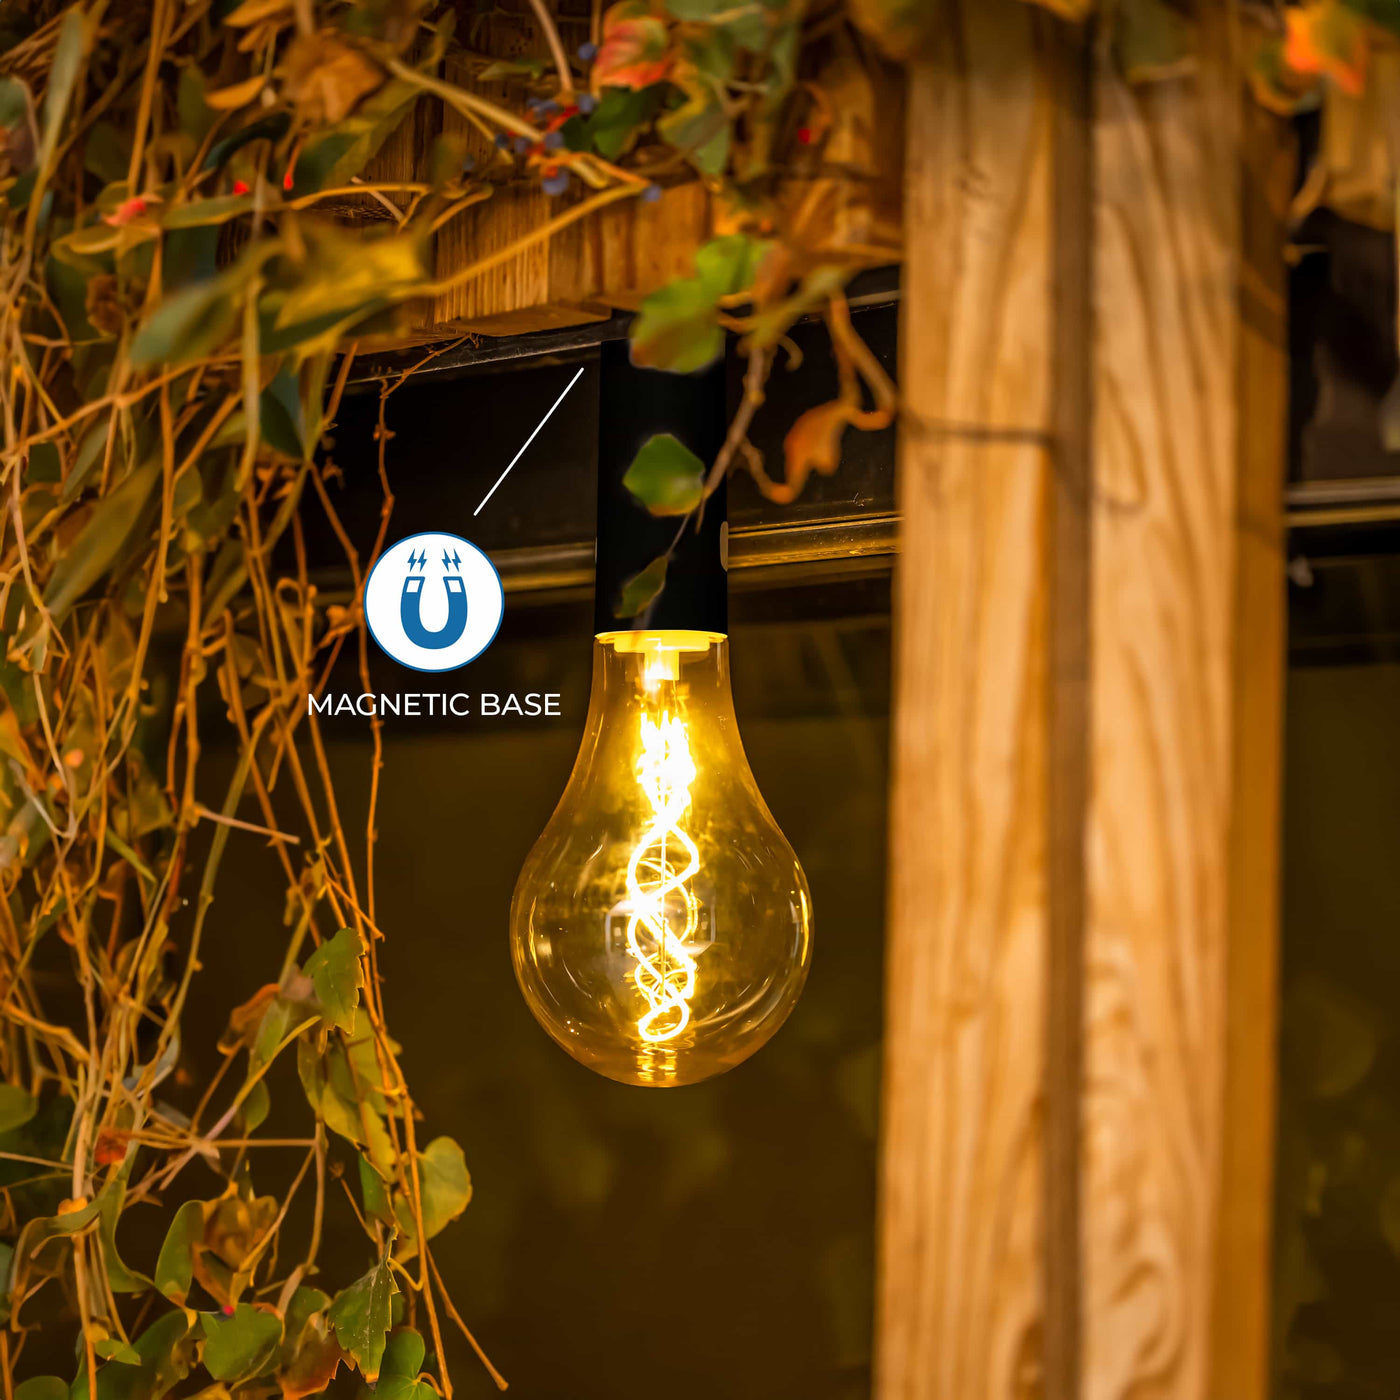 Simplifiez votre éclairage avec l'ampoule portable sans fil Edy 100 de Newgarden. Suspendez-la ou approchez-la d'une surface métallique pour une fixation sécurisée. Contrôlez facilement l'intensité lumineuse grâce à la télécommande incluse.